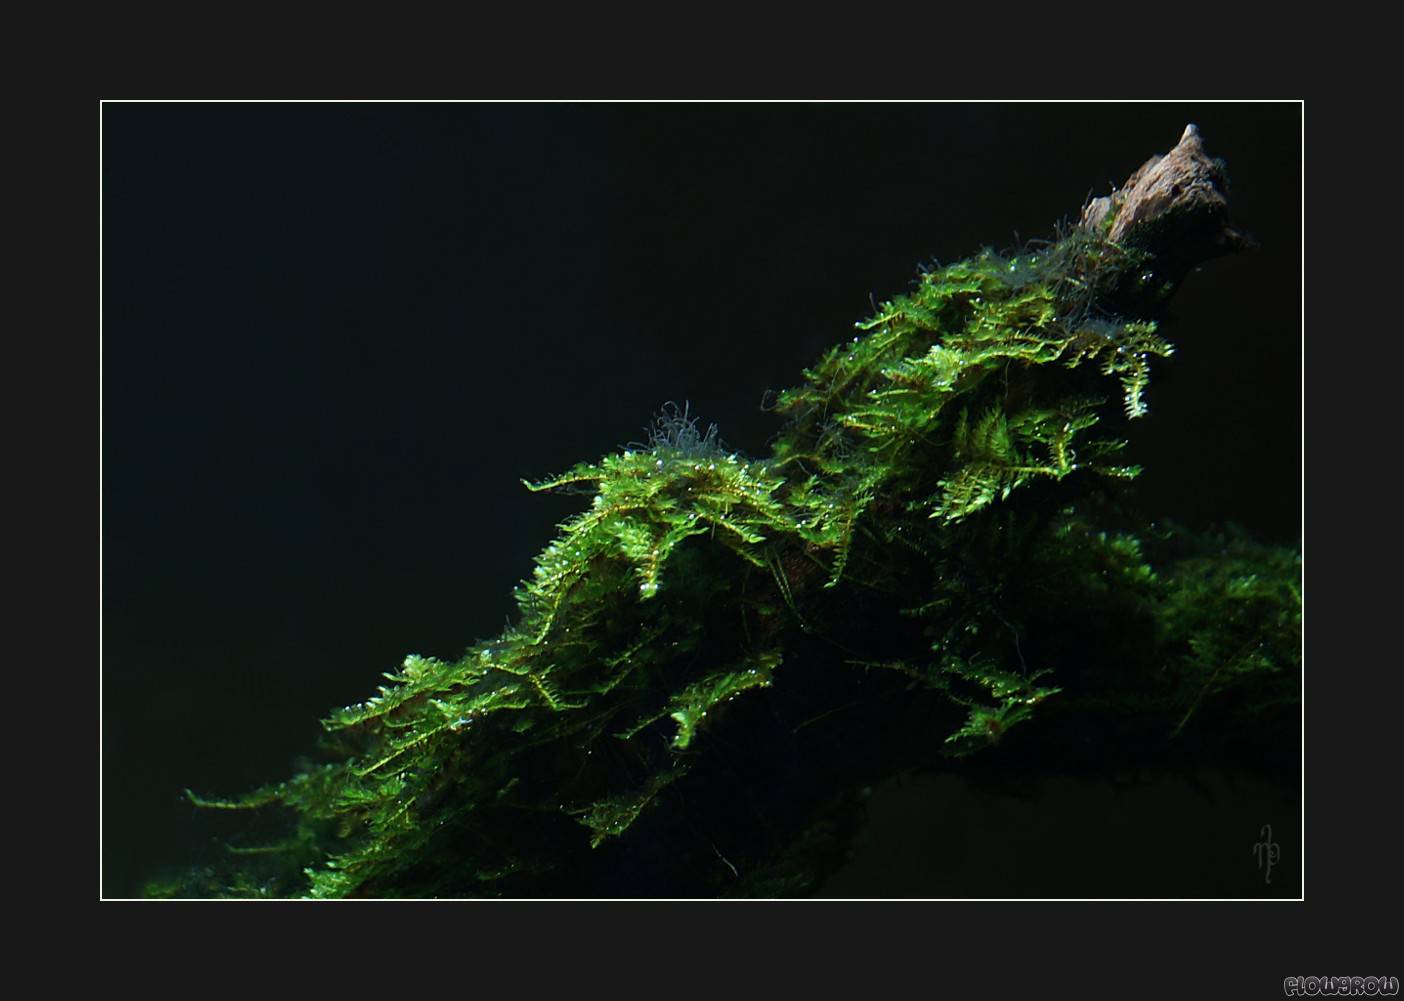 Vesicularia montagnei "Christmas Moss" - Flowgrow Aquatic Plant Database